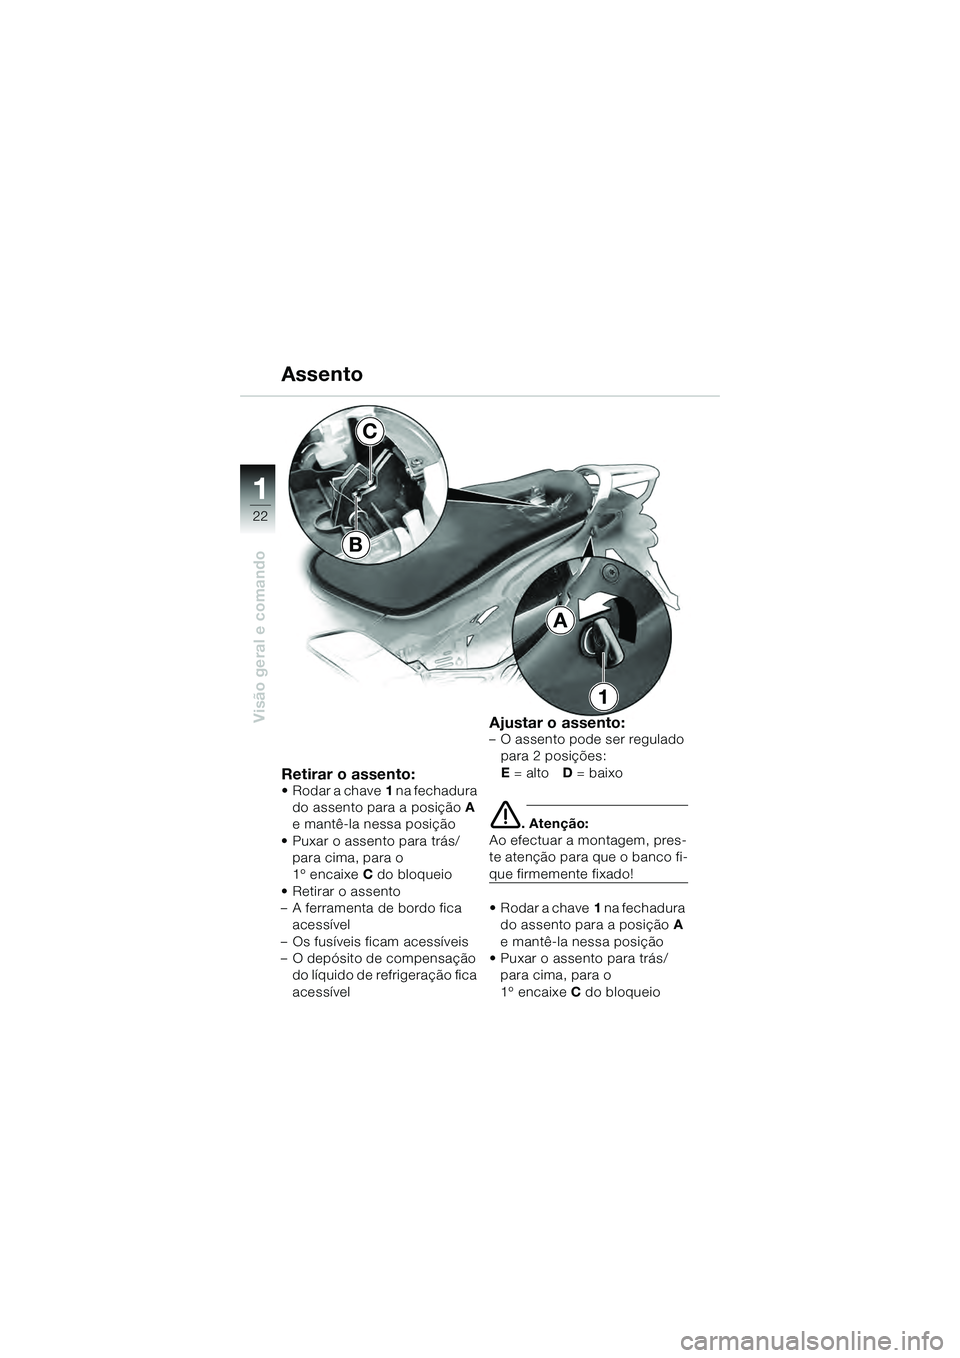 BMW MOTORRAD K 1200 GT 2004  Manual do condutor (in Portuguese) 22
Visão geral e comando
1
Retirar o assento:• Rodar a chave1 na fechadura 
do assento para a posição A 
e mantê-la nessa posição
• Puxar o assento para trás/ para cima, para o 
1º encaixe